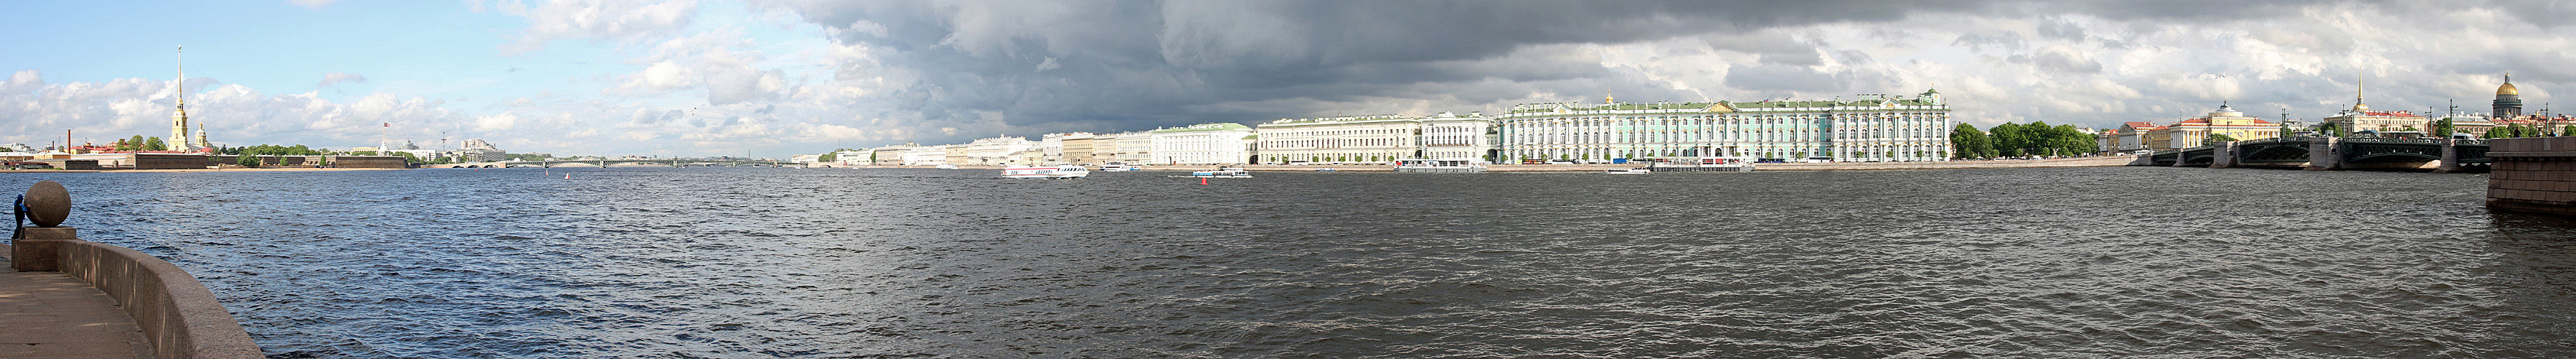 RUSSIE - photo panoramique de Saint Pétersbourg